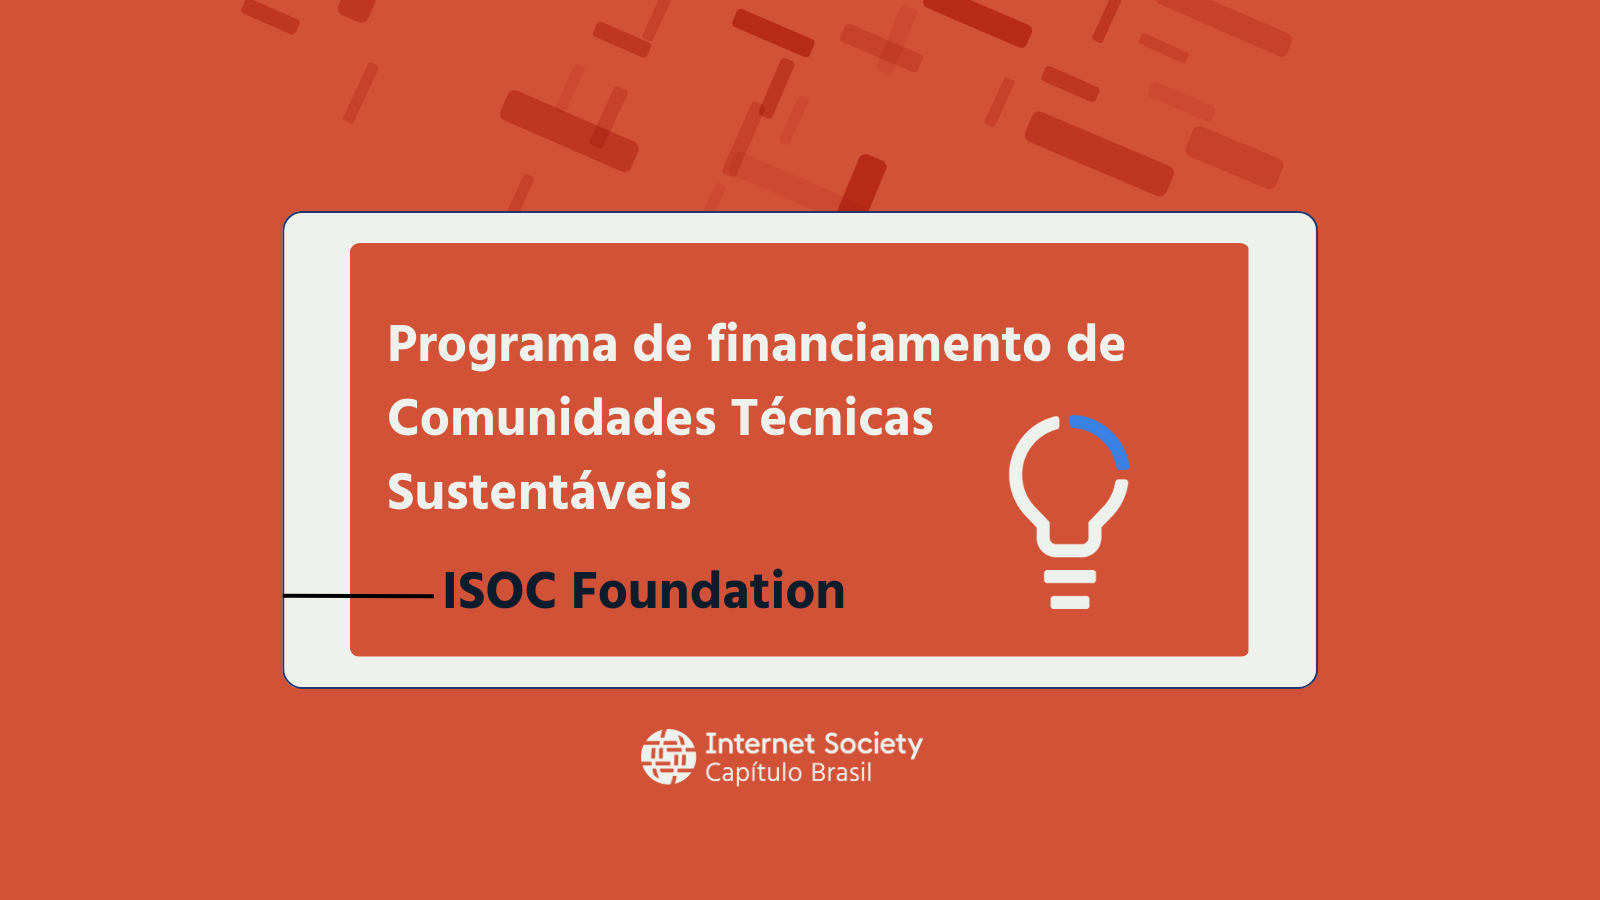 Programa de financiamento de Comunidades Técnicas Sustentáveis, da ISOC Foundation.